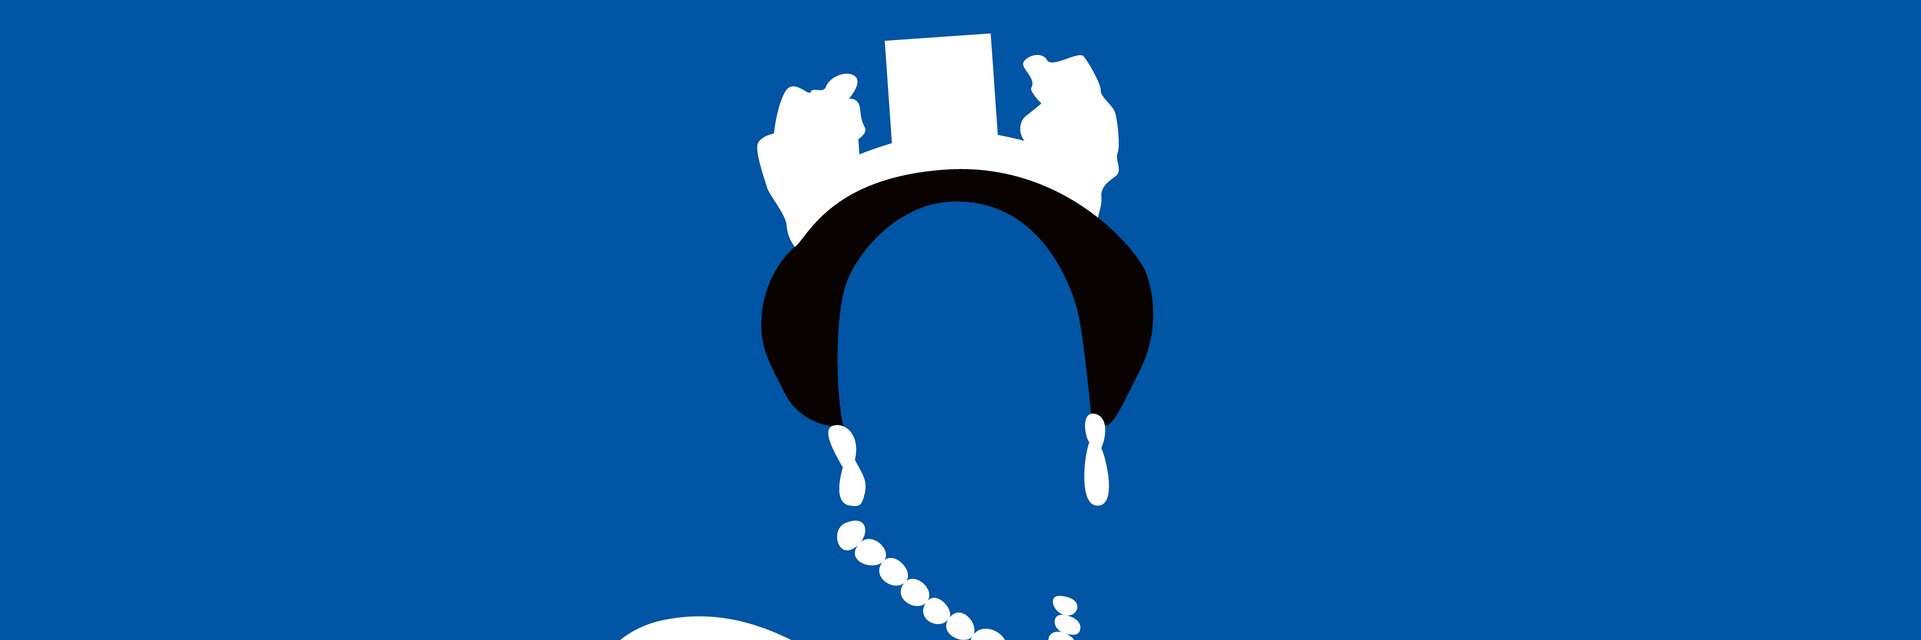 Keyvisual der Ausstellung "Die Royals kommen" zu sehen auf blauem Hintergrund, eine royale Persönlichkeit, grafisch dargestellt, ohne Gesicht